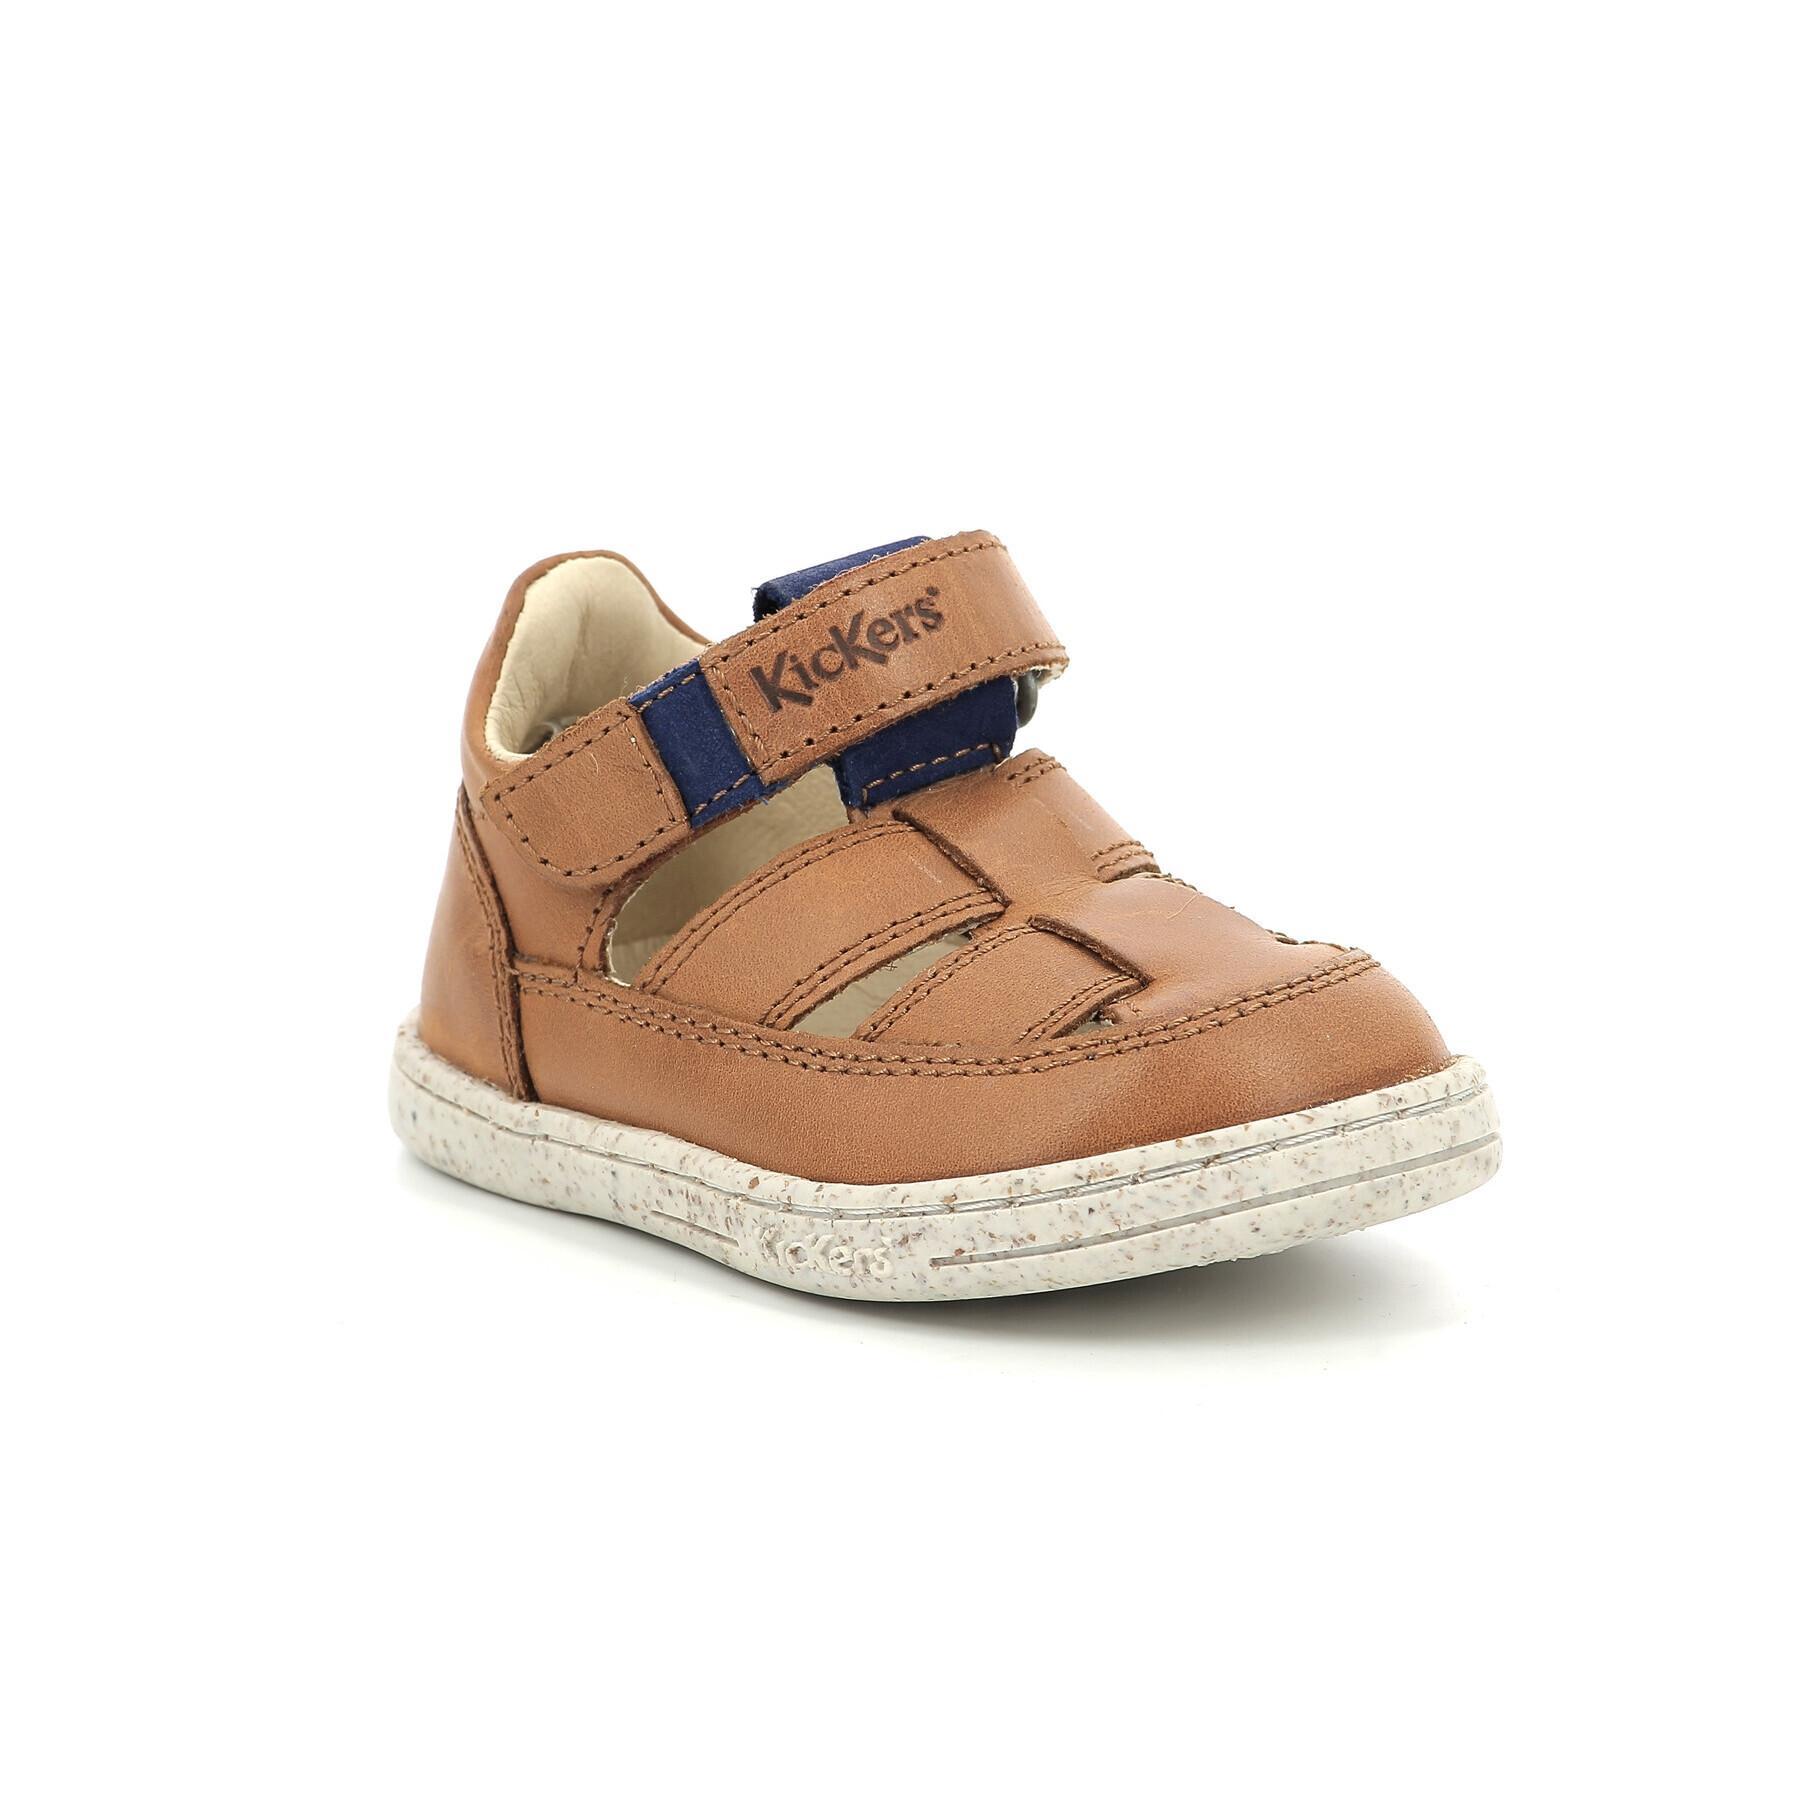 Baby sandals Kickers Tractus